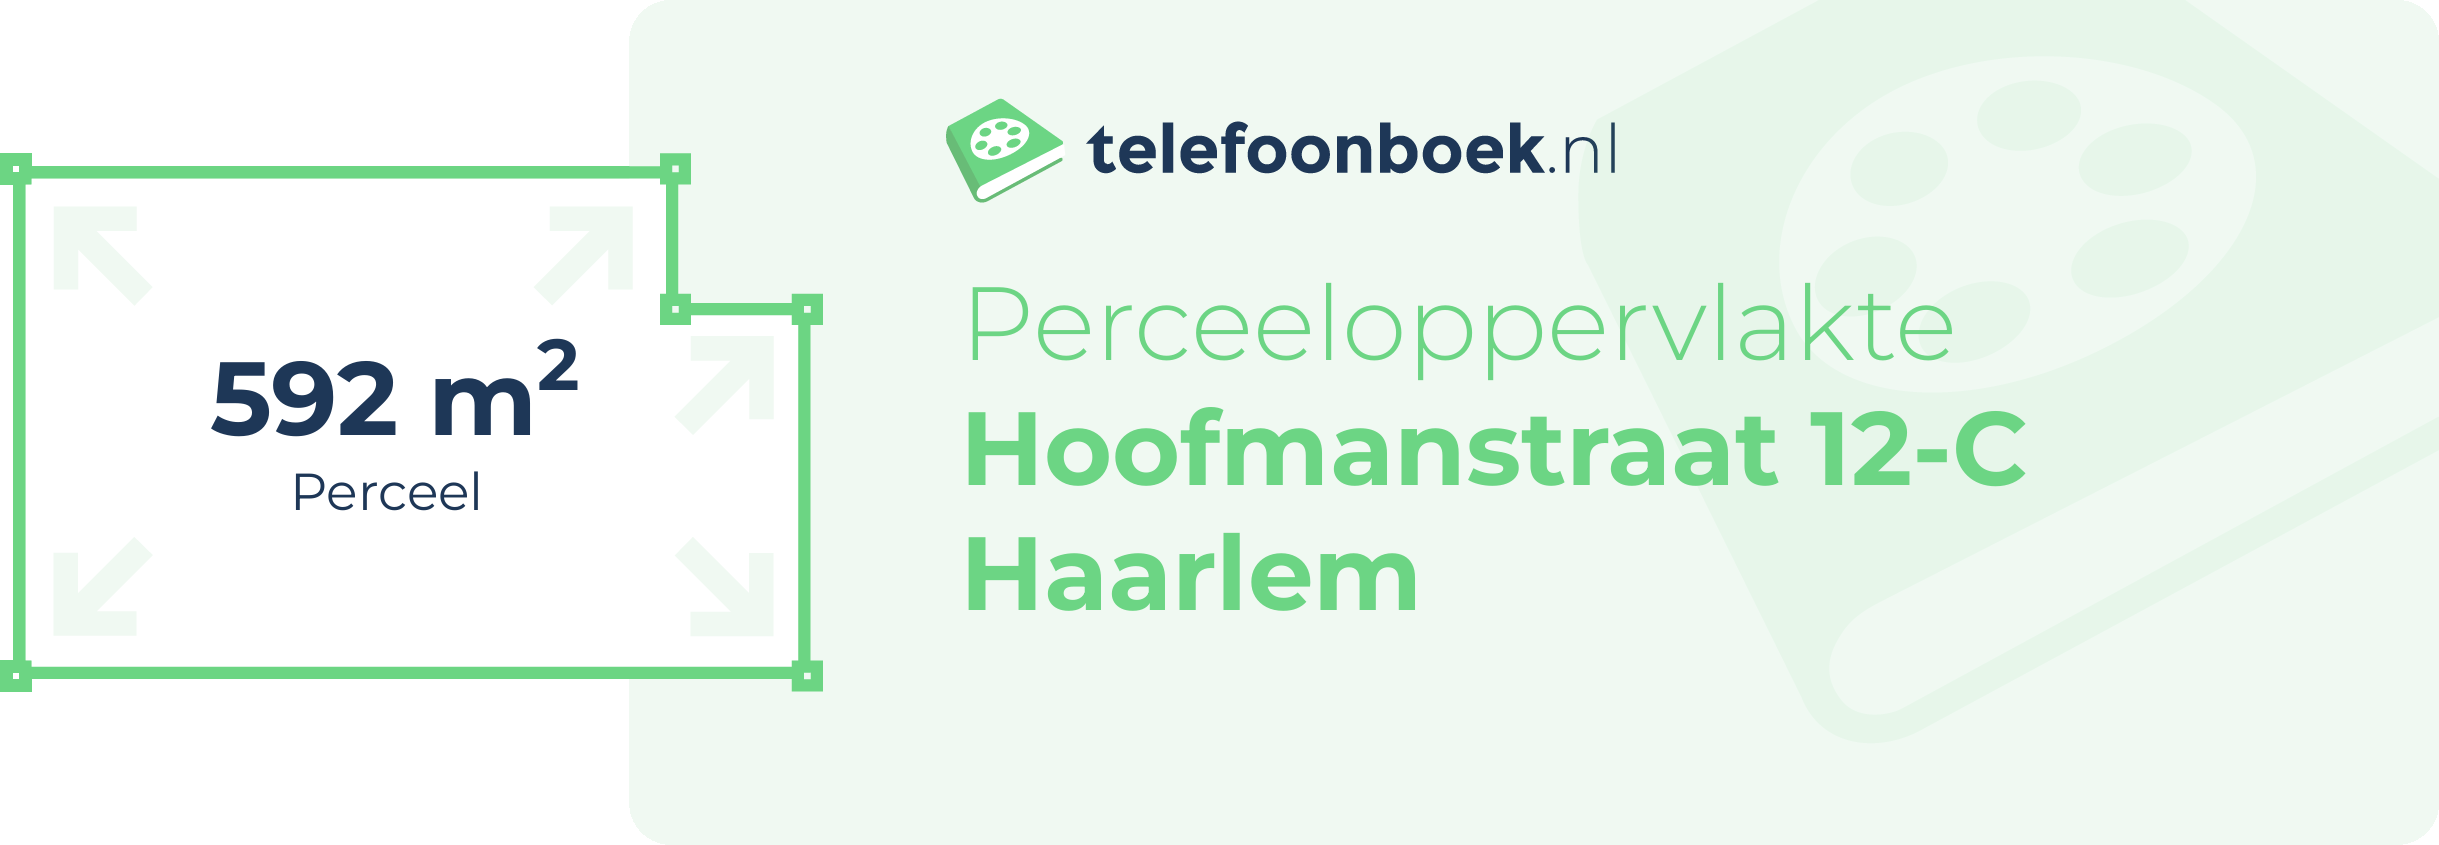 Perceeloppervlakte Hoofmanstraat 12-C Haarlem